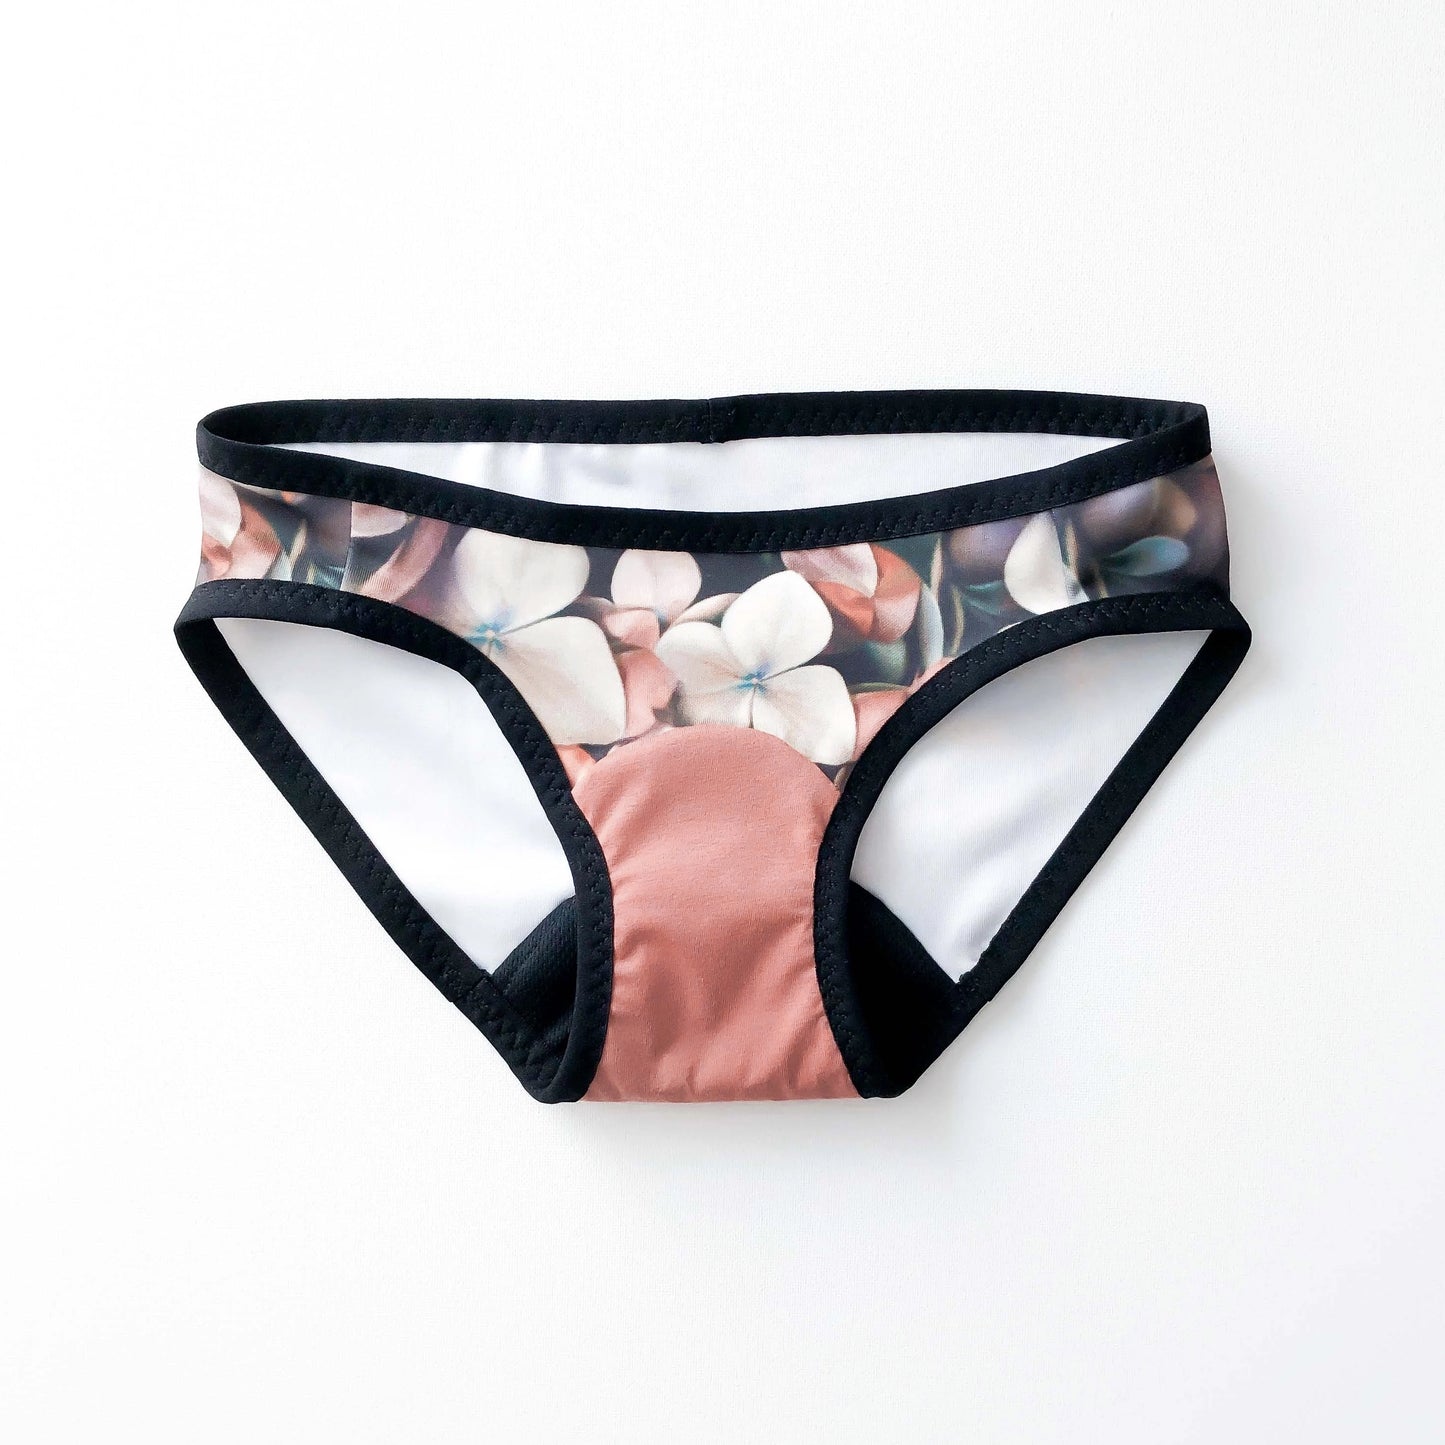 Period Panty Sewing Kit® - Pebble Pink